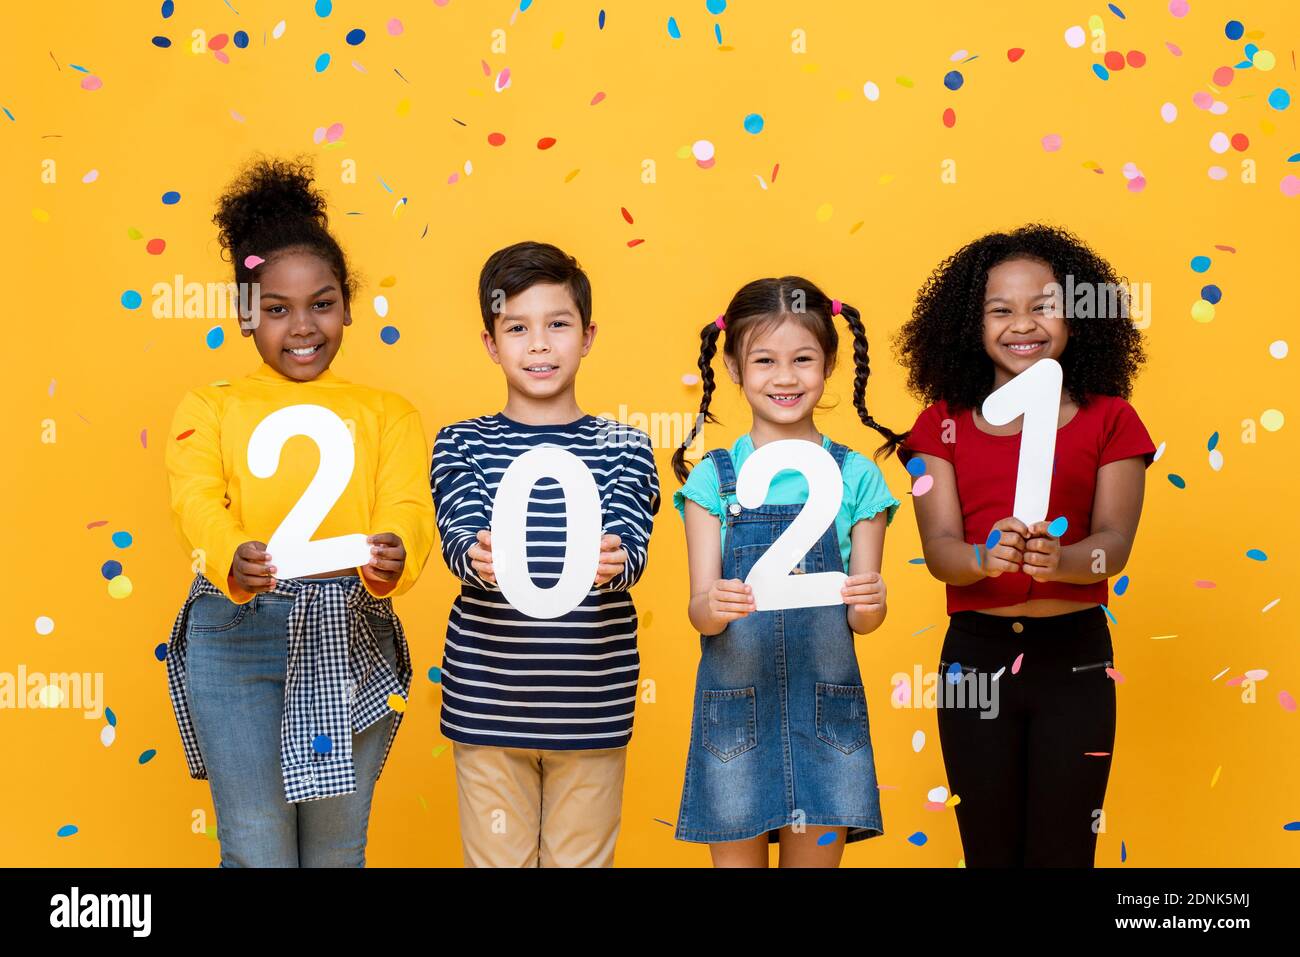 Lindo sonriente carrera mixta niños mostrando números 2021 celebrando nuevo año aislado sobre fondo amarillo Foto de stock